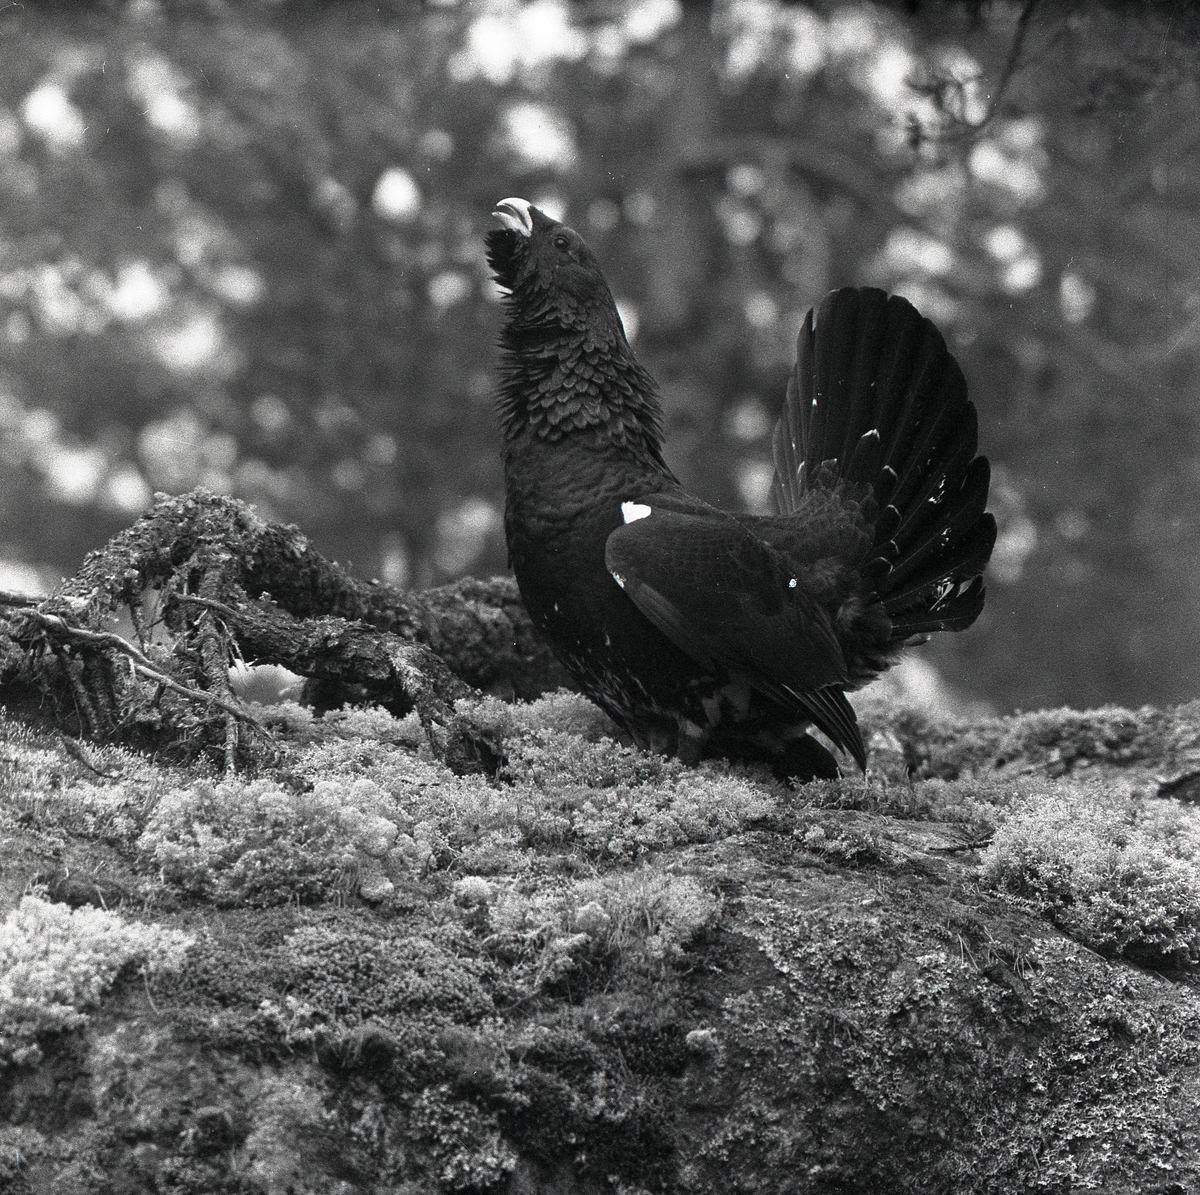 Fågel står på en sten med mossor, lavar och grenar när den mot skogens bakgrund fångas på bild. Tjädertuppen spelar med fluffig fjäderdräkt och resta stjärtfjädrar när Hilding Mickelsson fotograferar den i profil.